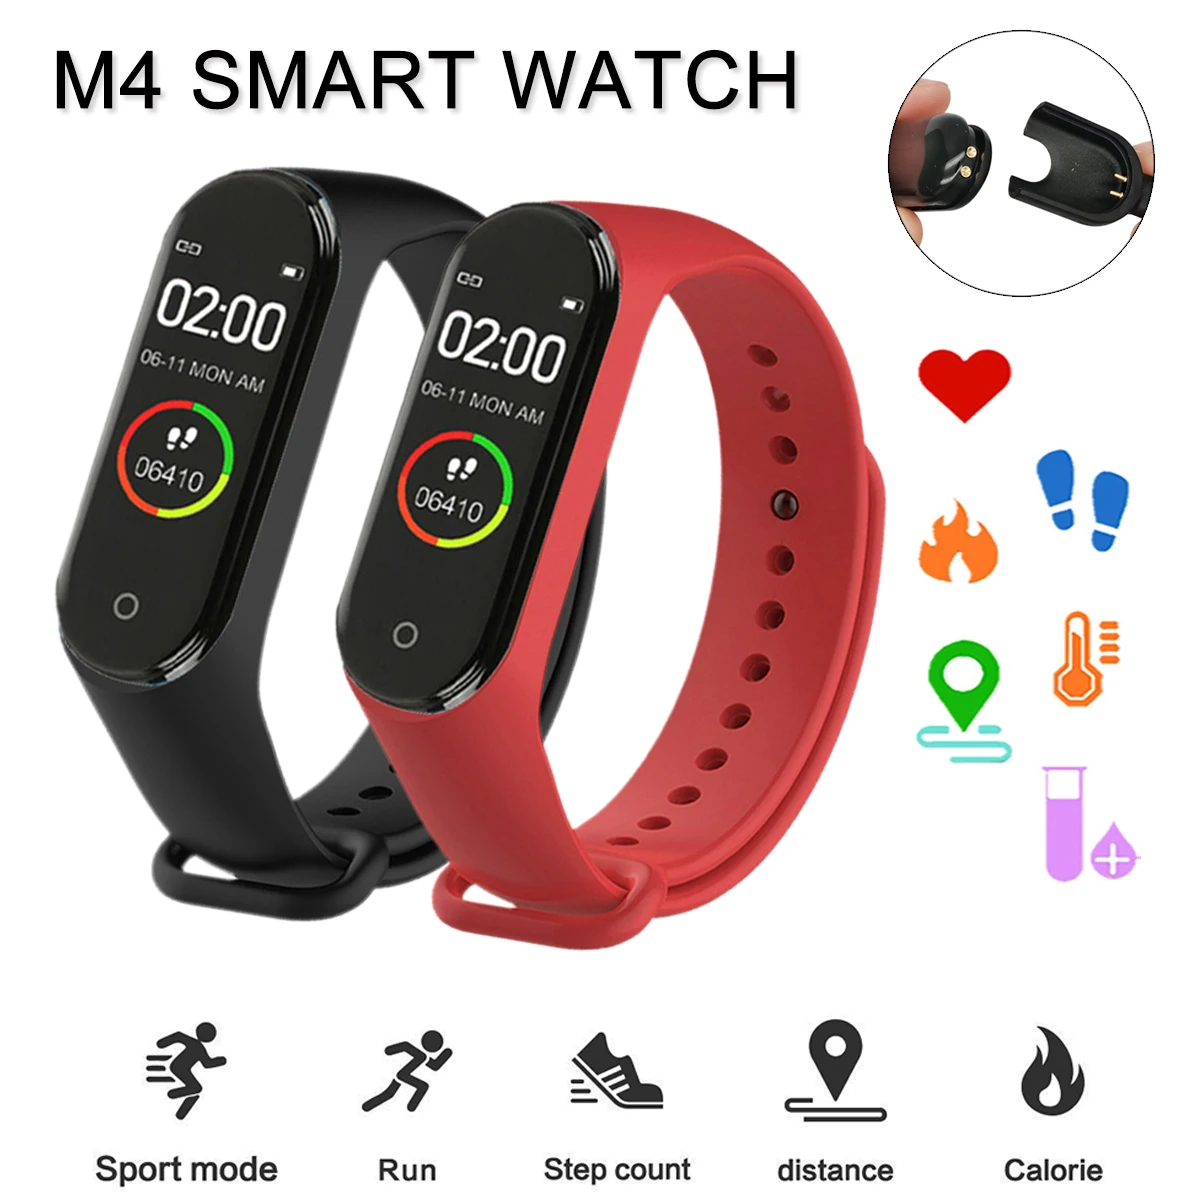 M4 Smart Watch Homens Mulheres ID do Chamador Relógio Despertador Vibração Lembrete de Vestuário Pedômetro Calorias Motion Tracker Digital relógio de Pulso